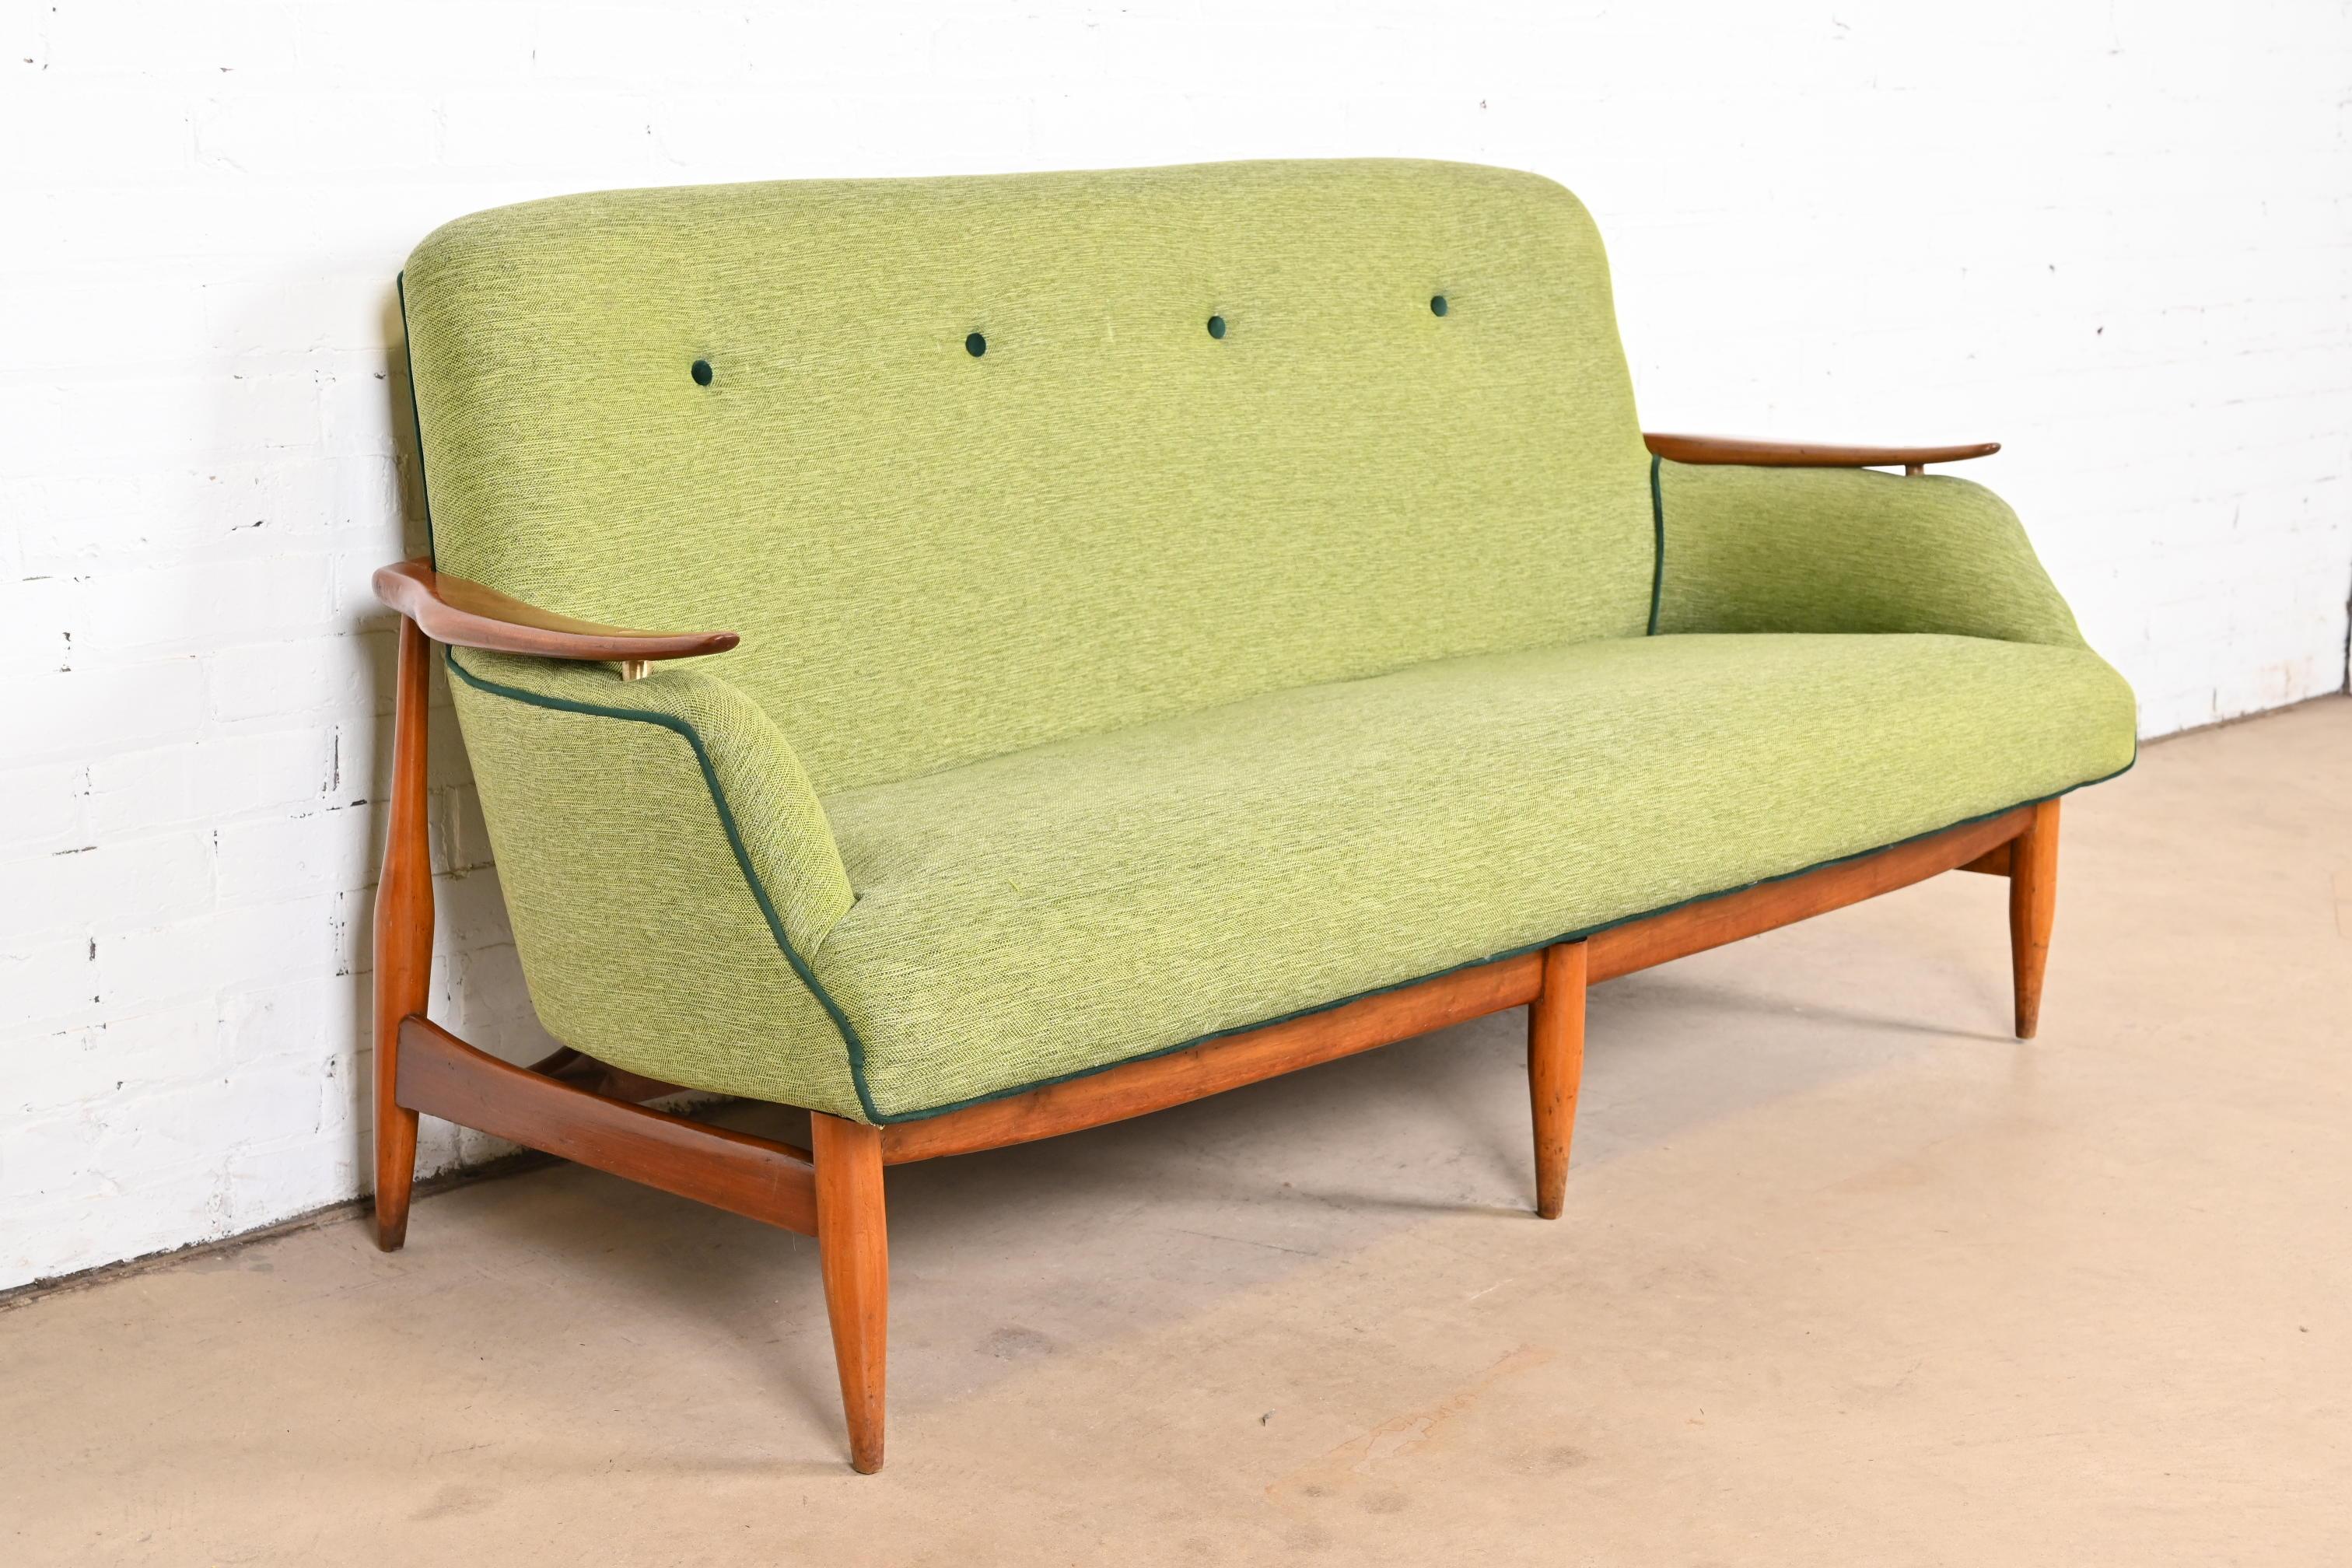 Finn Juhl Danish Modern Upholstered Sculpted Teak Sofa, 1950s For Sale 1